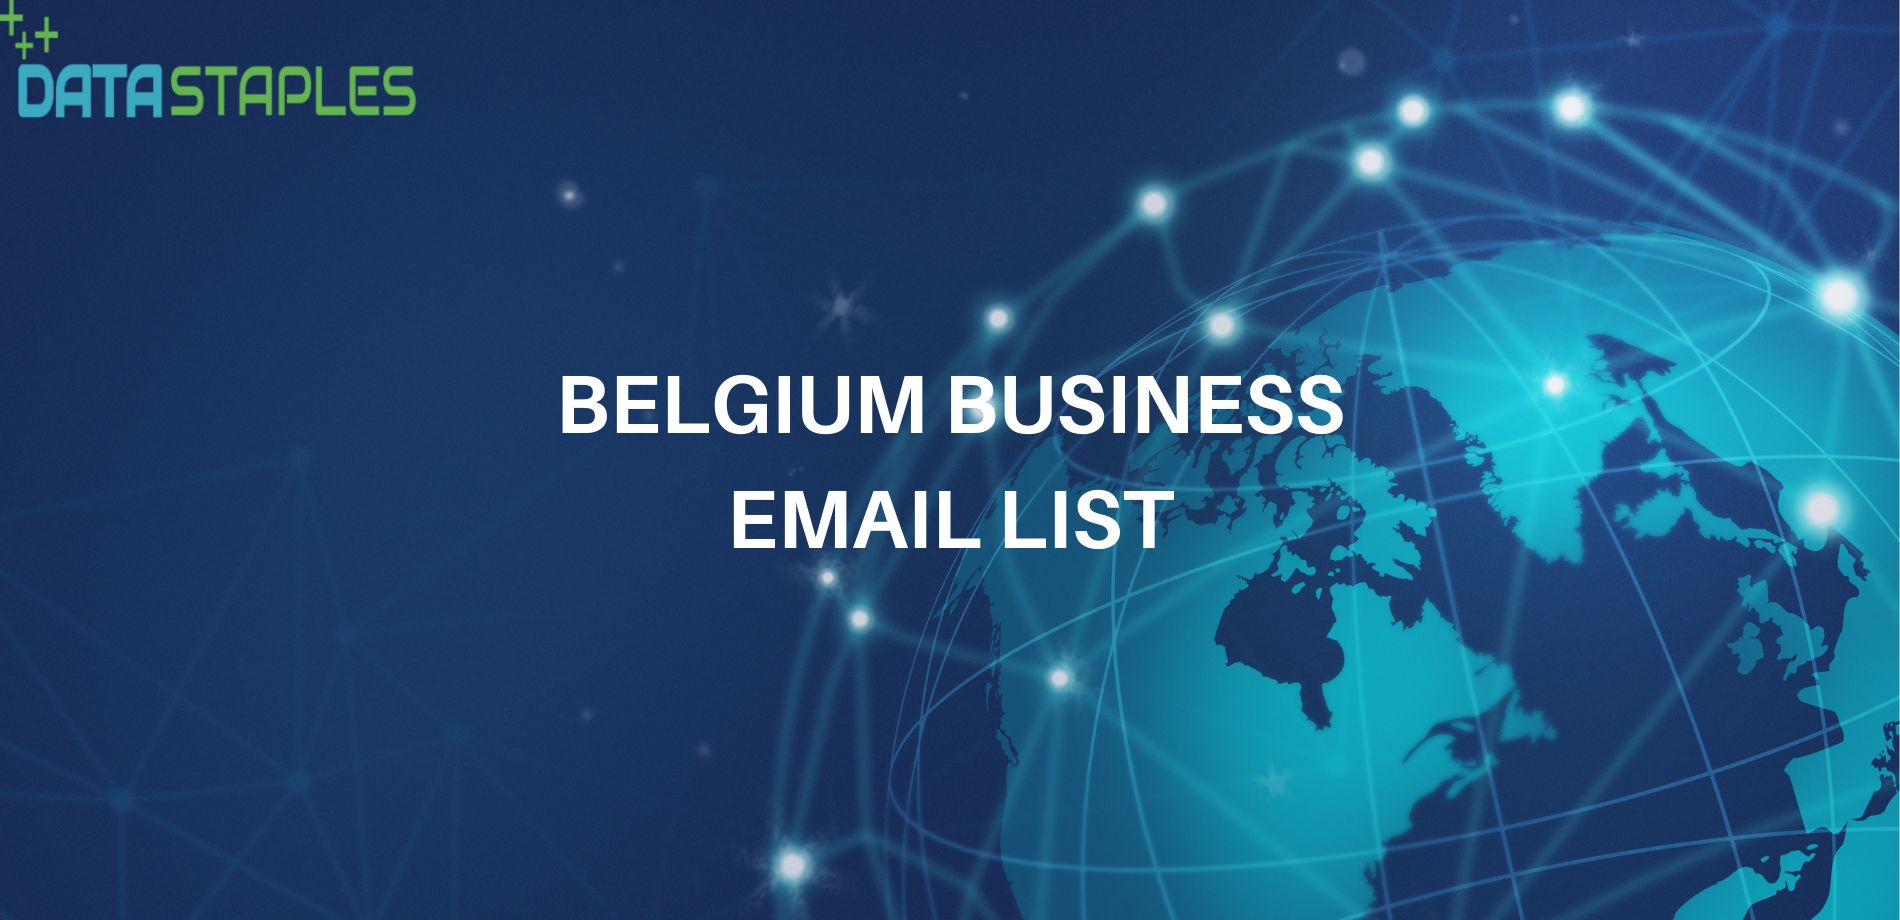 Belgium Business Email List | Datastaple